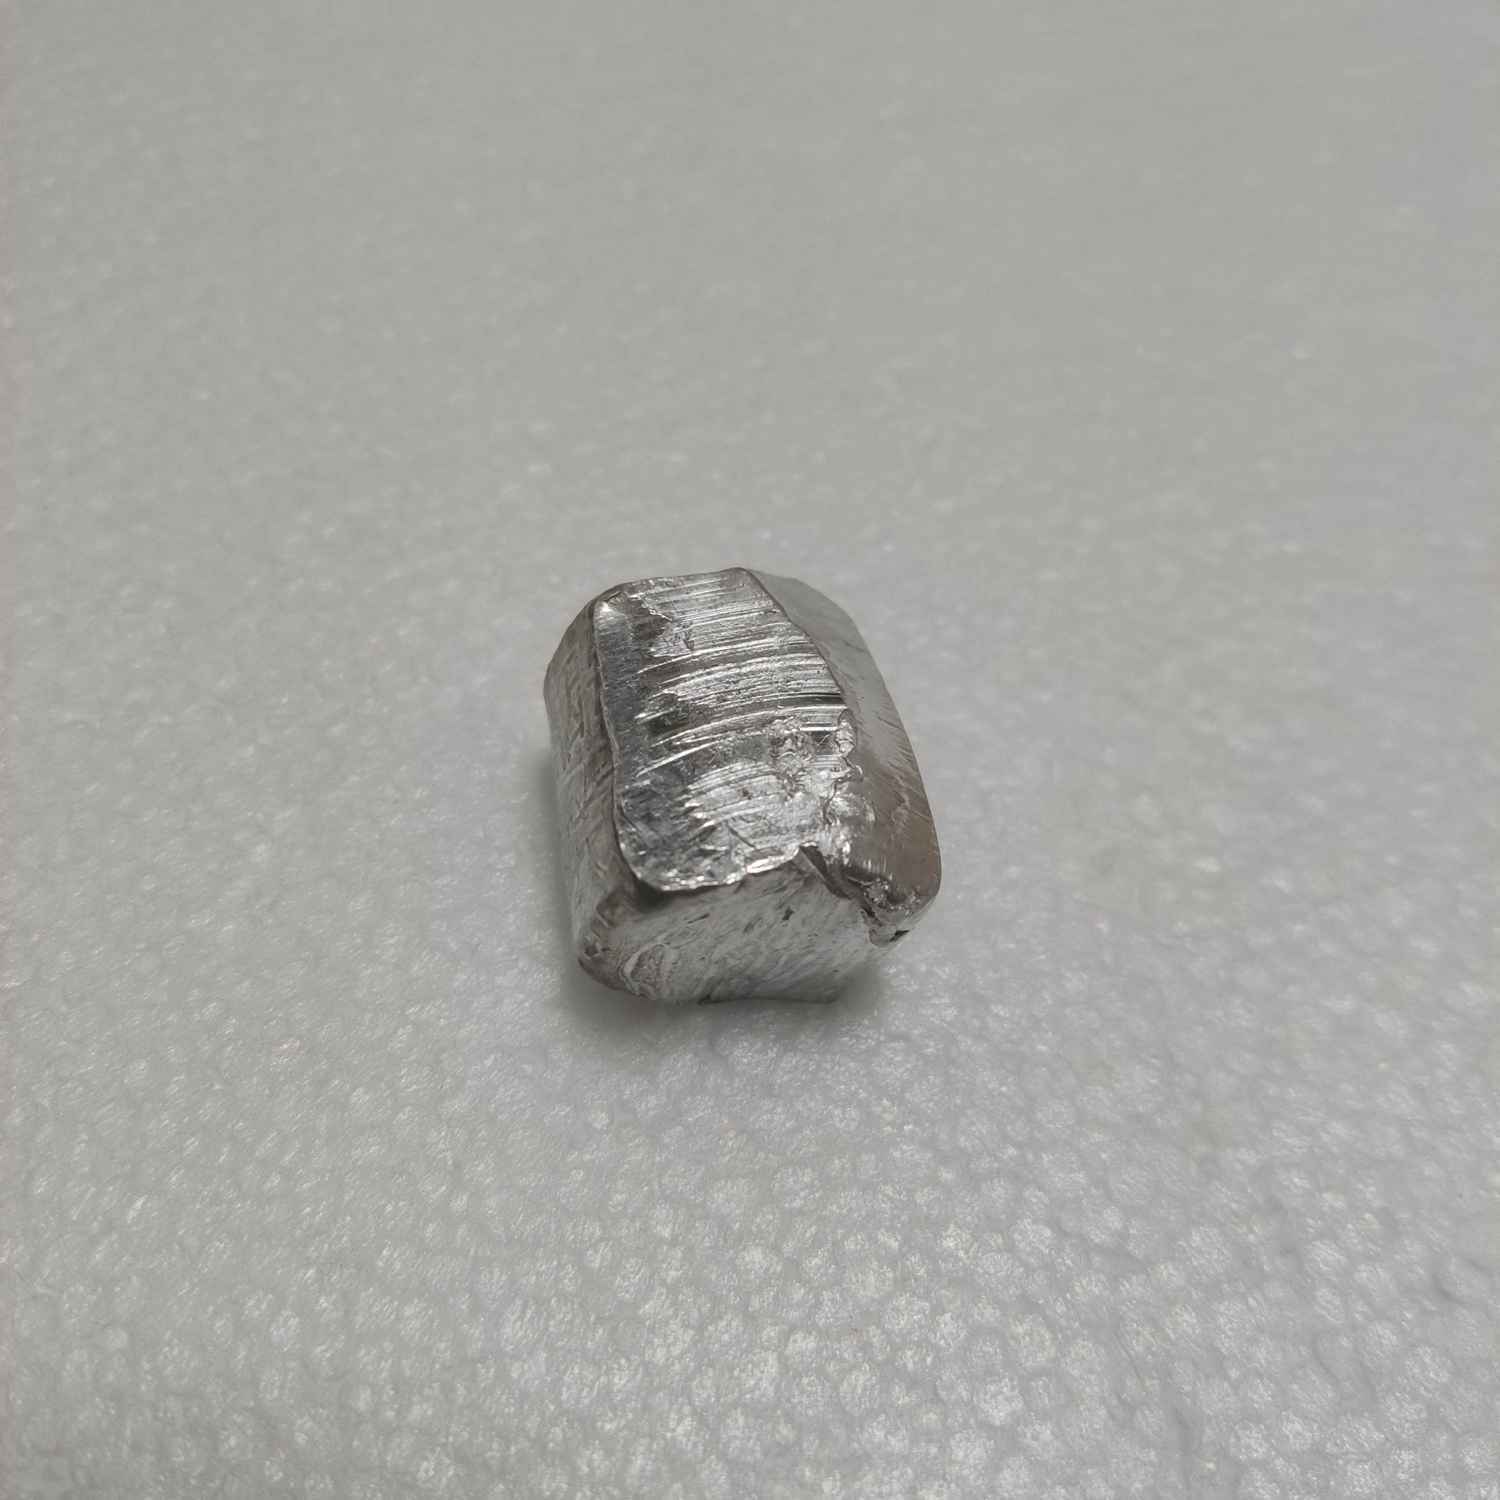 100g Pure Indium Metal  Indium In Metal ingots blocks bar lumps 99.995%